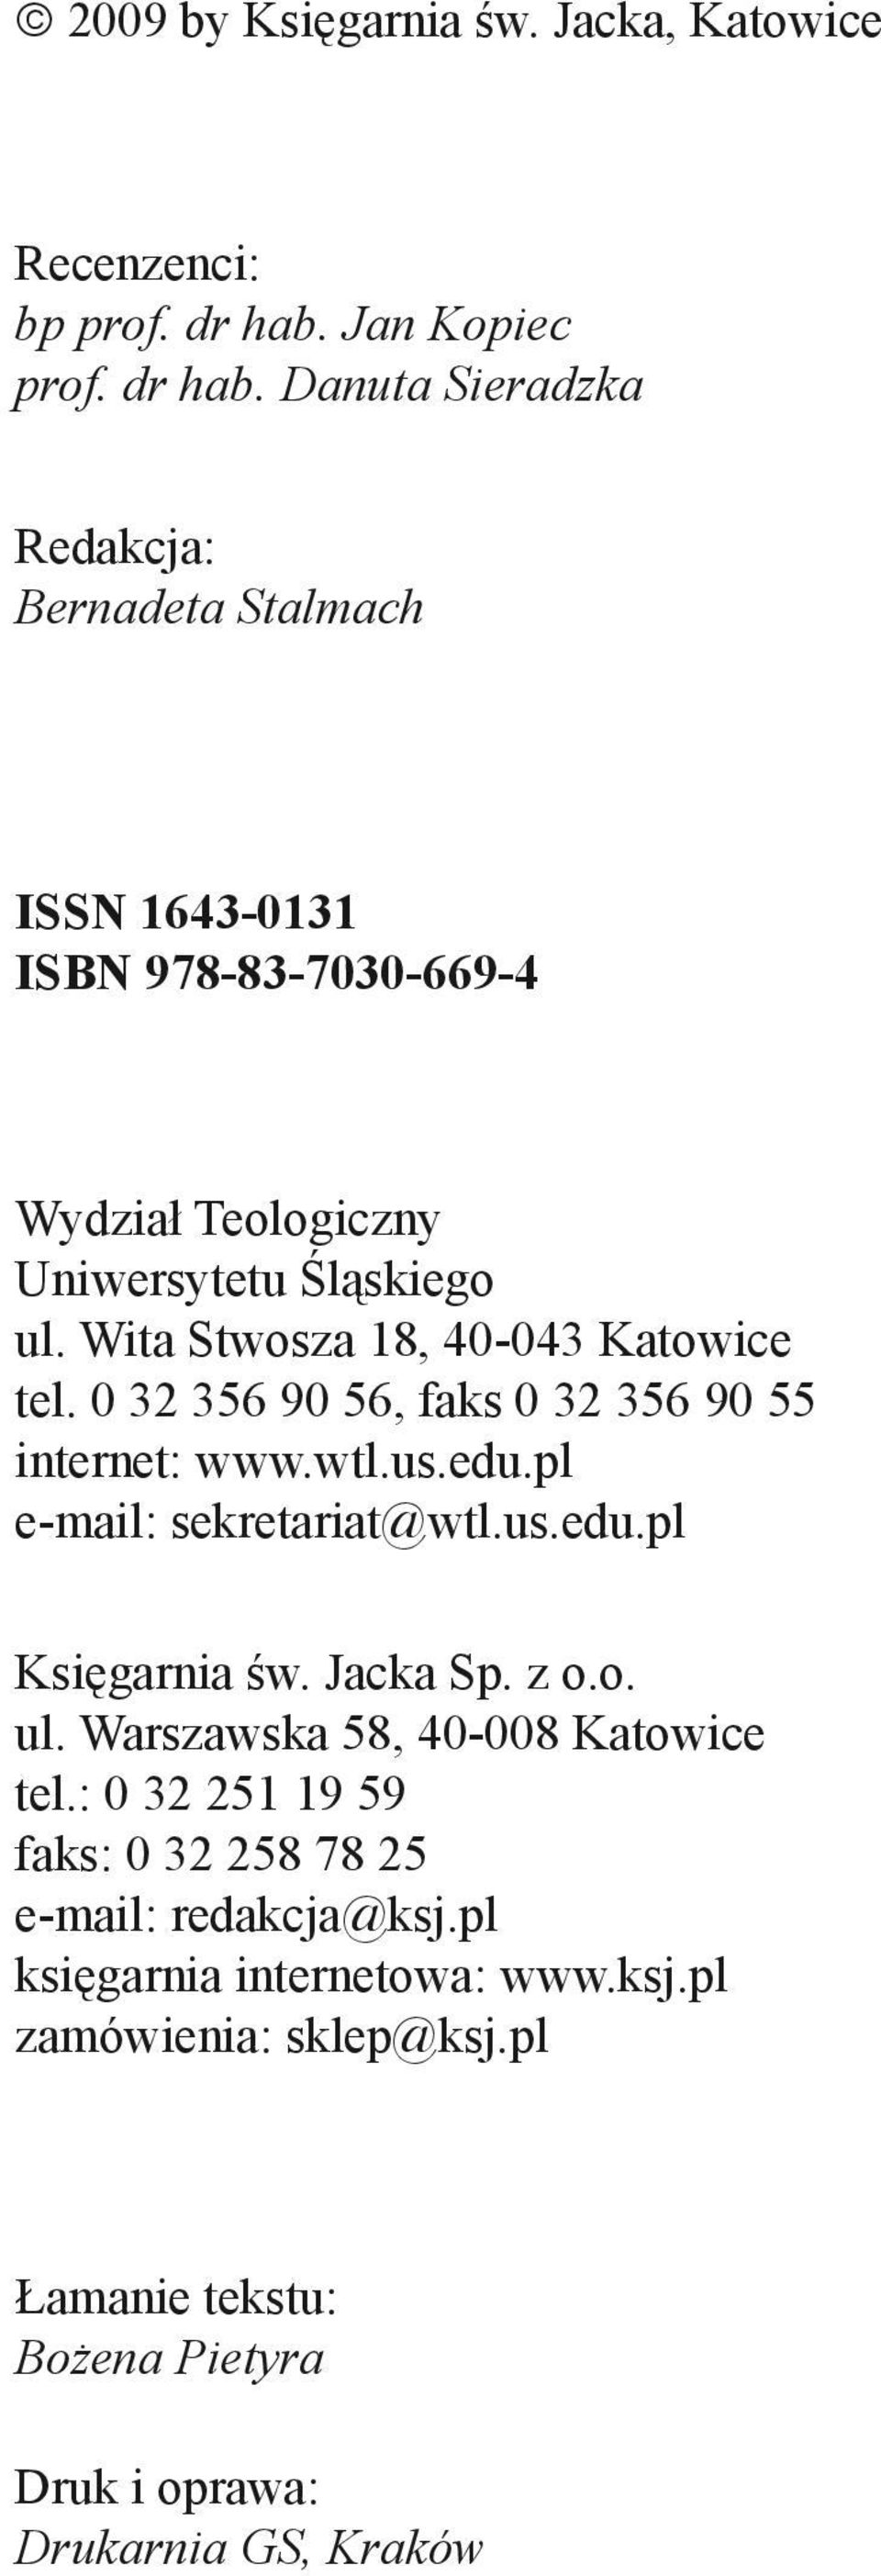 Wita Stwosza 18, 40-043 Katowice tel. 0 32 356 90 56, faks 0 32 356 90 55 internet: www.wtl.us.edu.pl e-mail: sekretariat@wtl.us.edu.pl Księgarnia św. Jacka Sp. z o.o. ul.